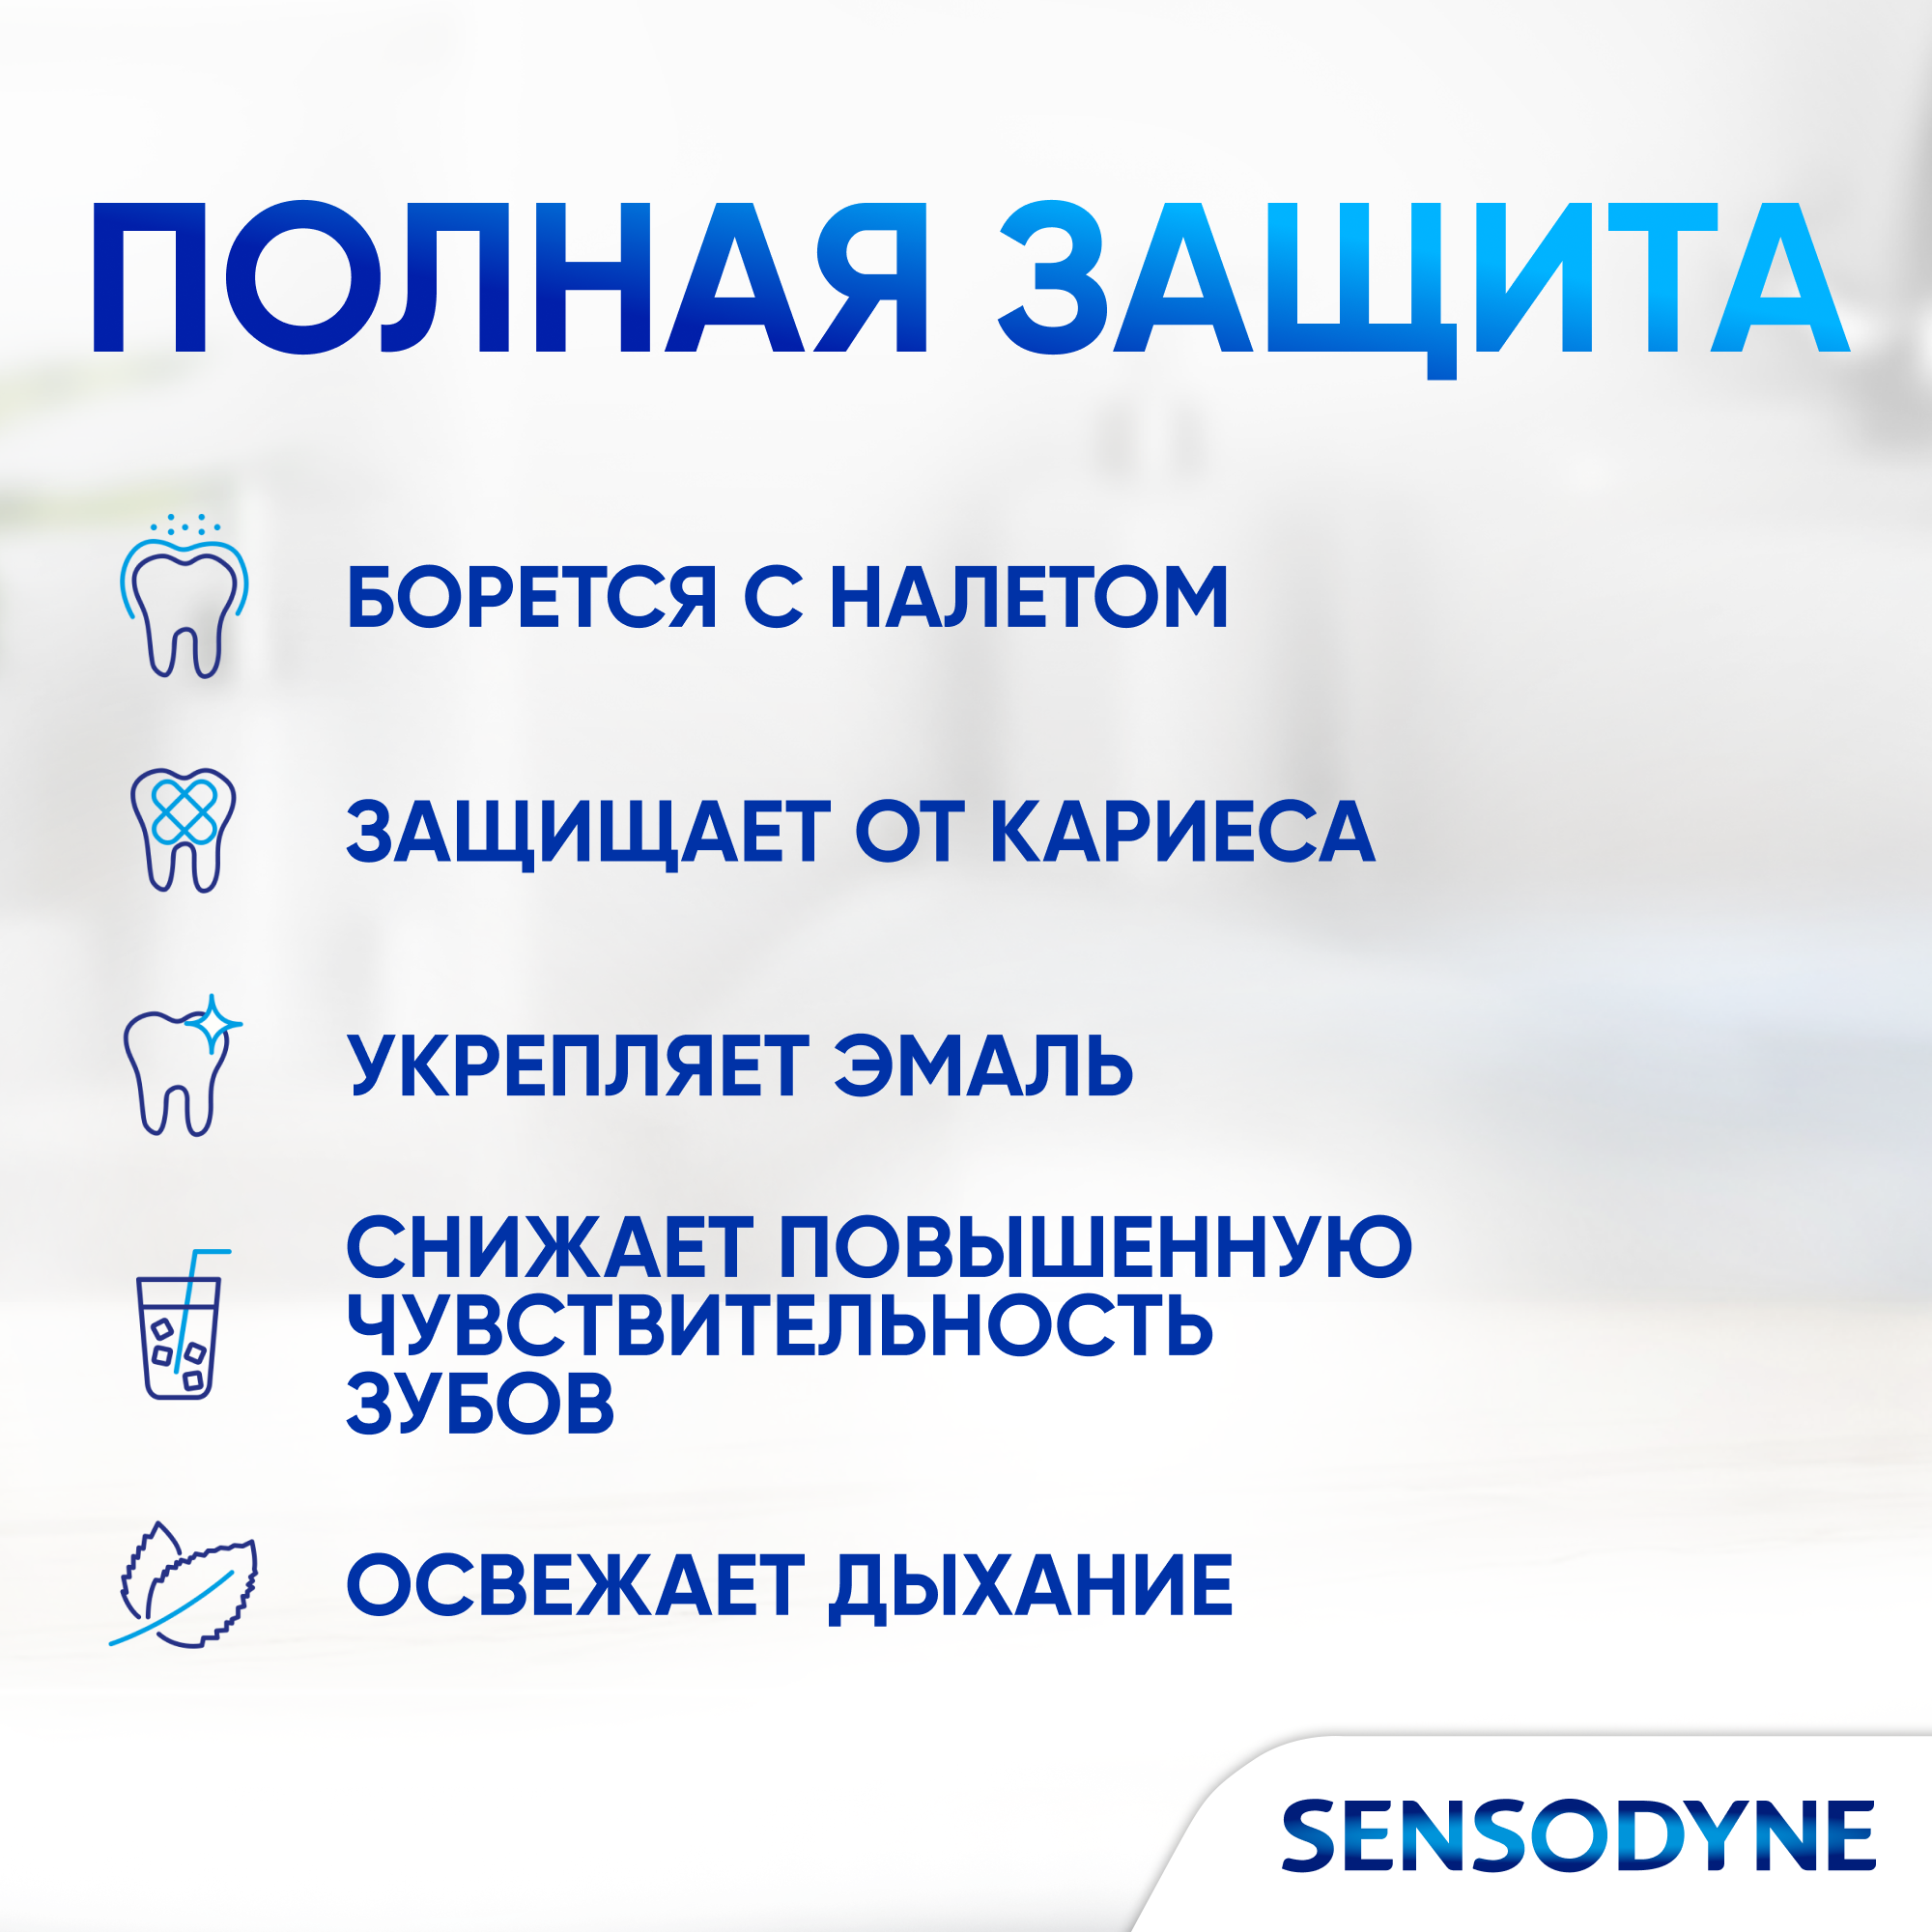 Зубная паста Sensodyne Ежедневная Защита Морозная мята с фтором, для снижения чувствительности зубов и защиты от кариеса, 75 мл